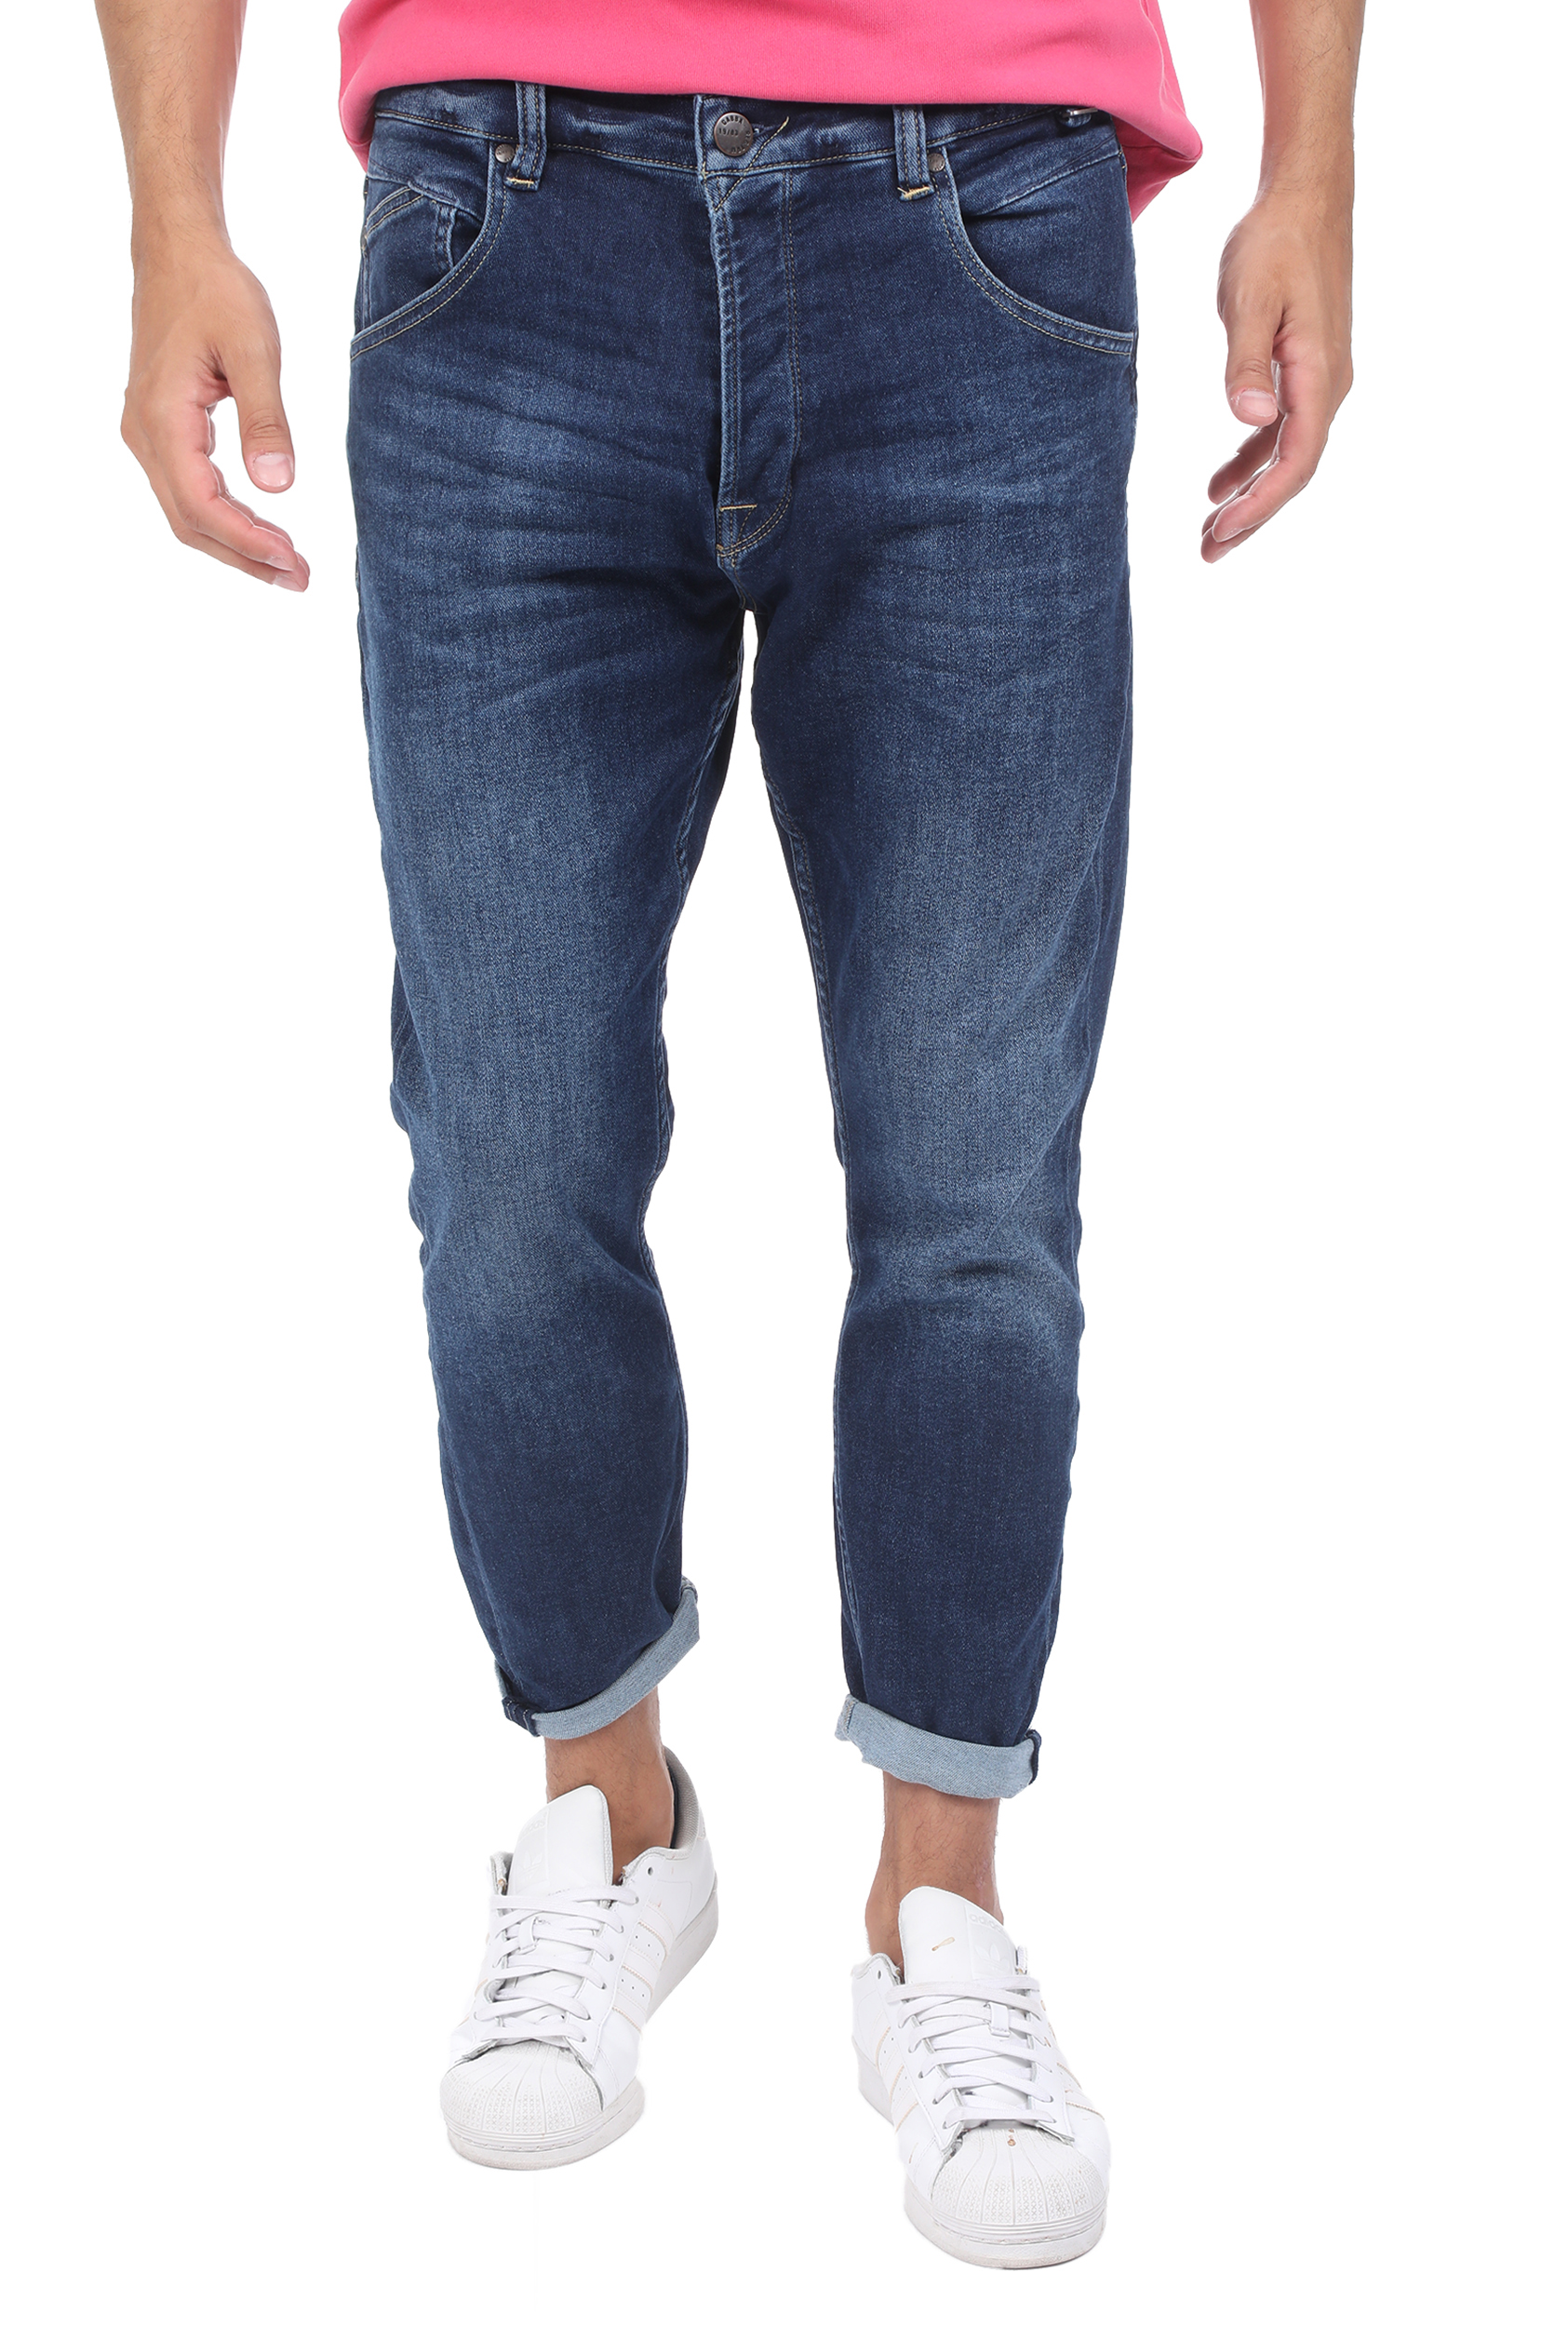 Ανδρικά/Ρούχα/Τζίν/Straight GABBA - Ανδρικό jean παντελόνι GABBA Alex μπλε